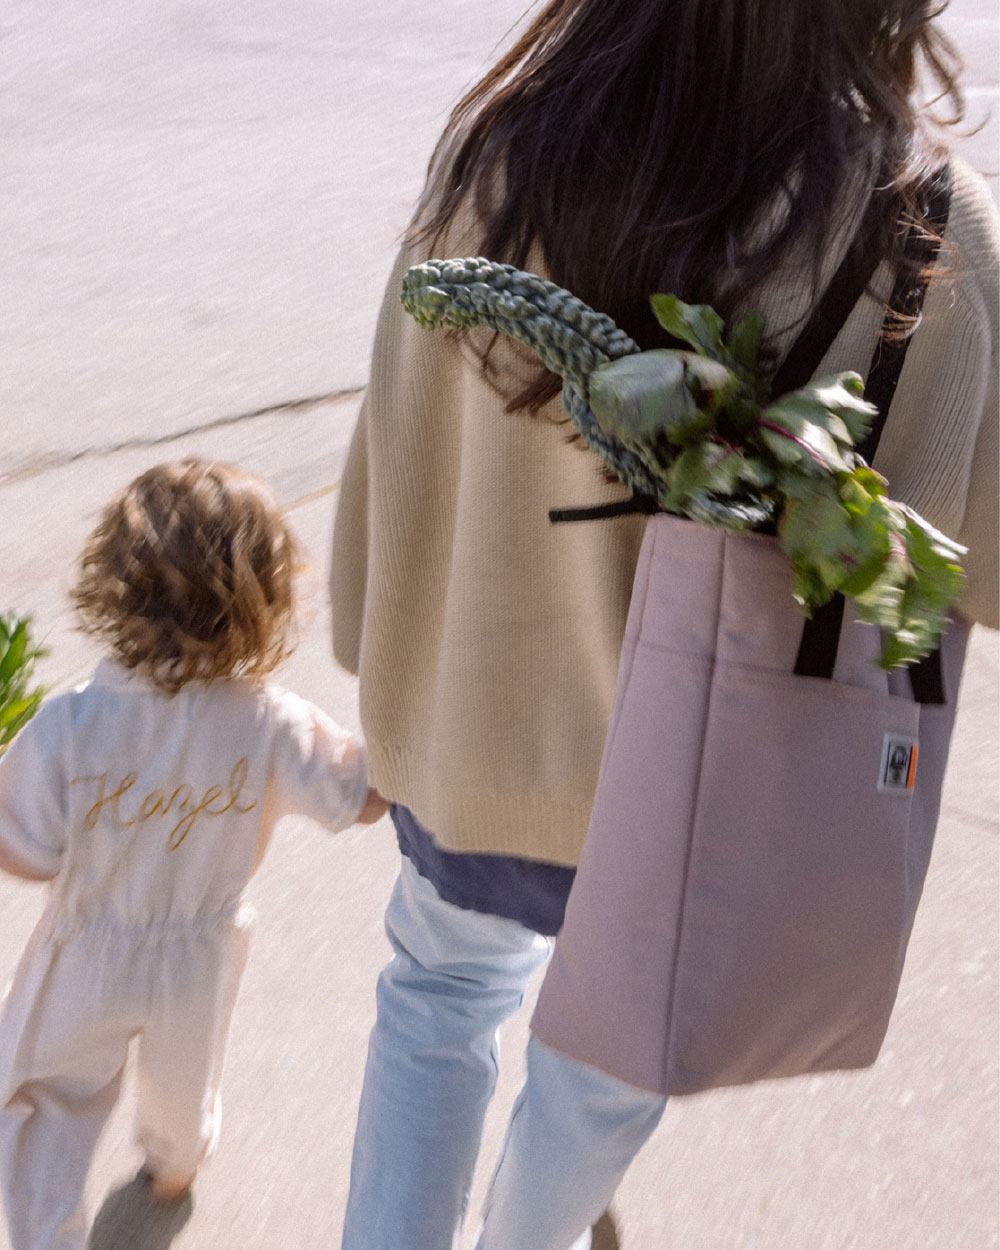 une femme avec un sac cabas rempli de légumes marche avec sa petite fille.